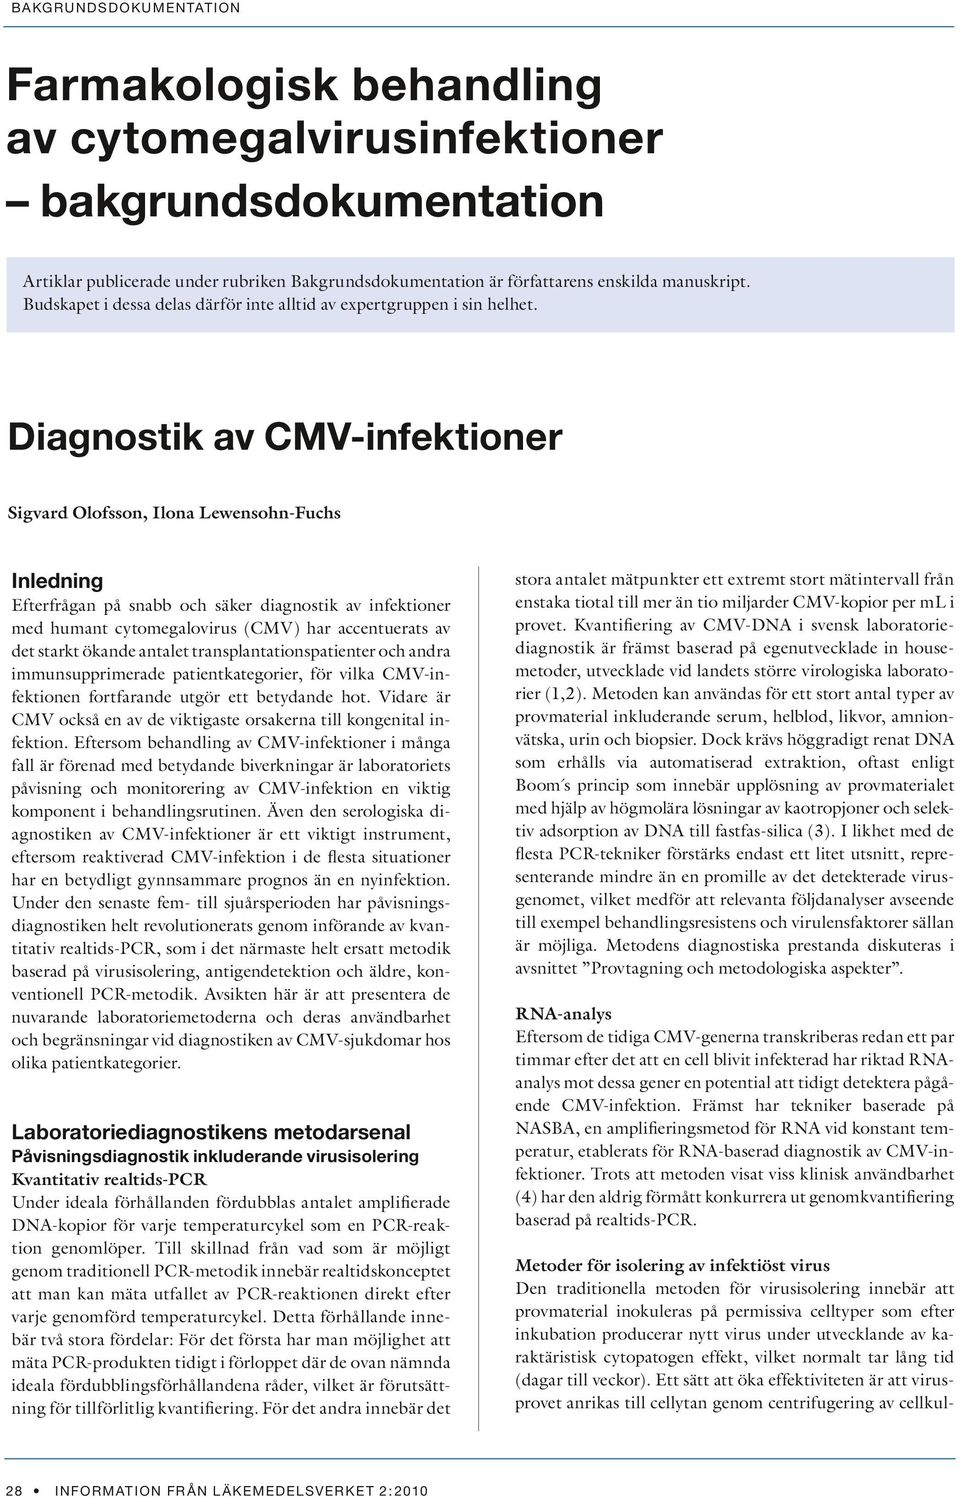 Diagnostik av CMV-infektioner Sigvard Olofsson, Ilona Lewensohn-Fuchs Inledning Efterfrågan på snabb och säker diagnostik av infektioner med humant cytomegalovirus (CMV) har accentuerats av det